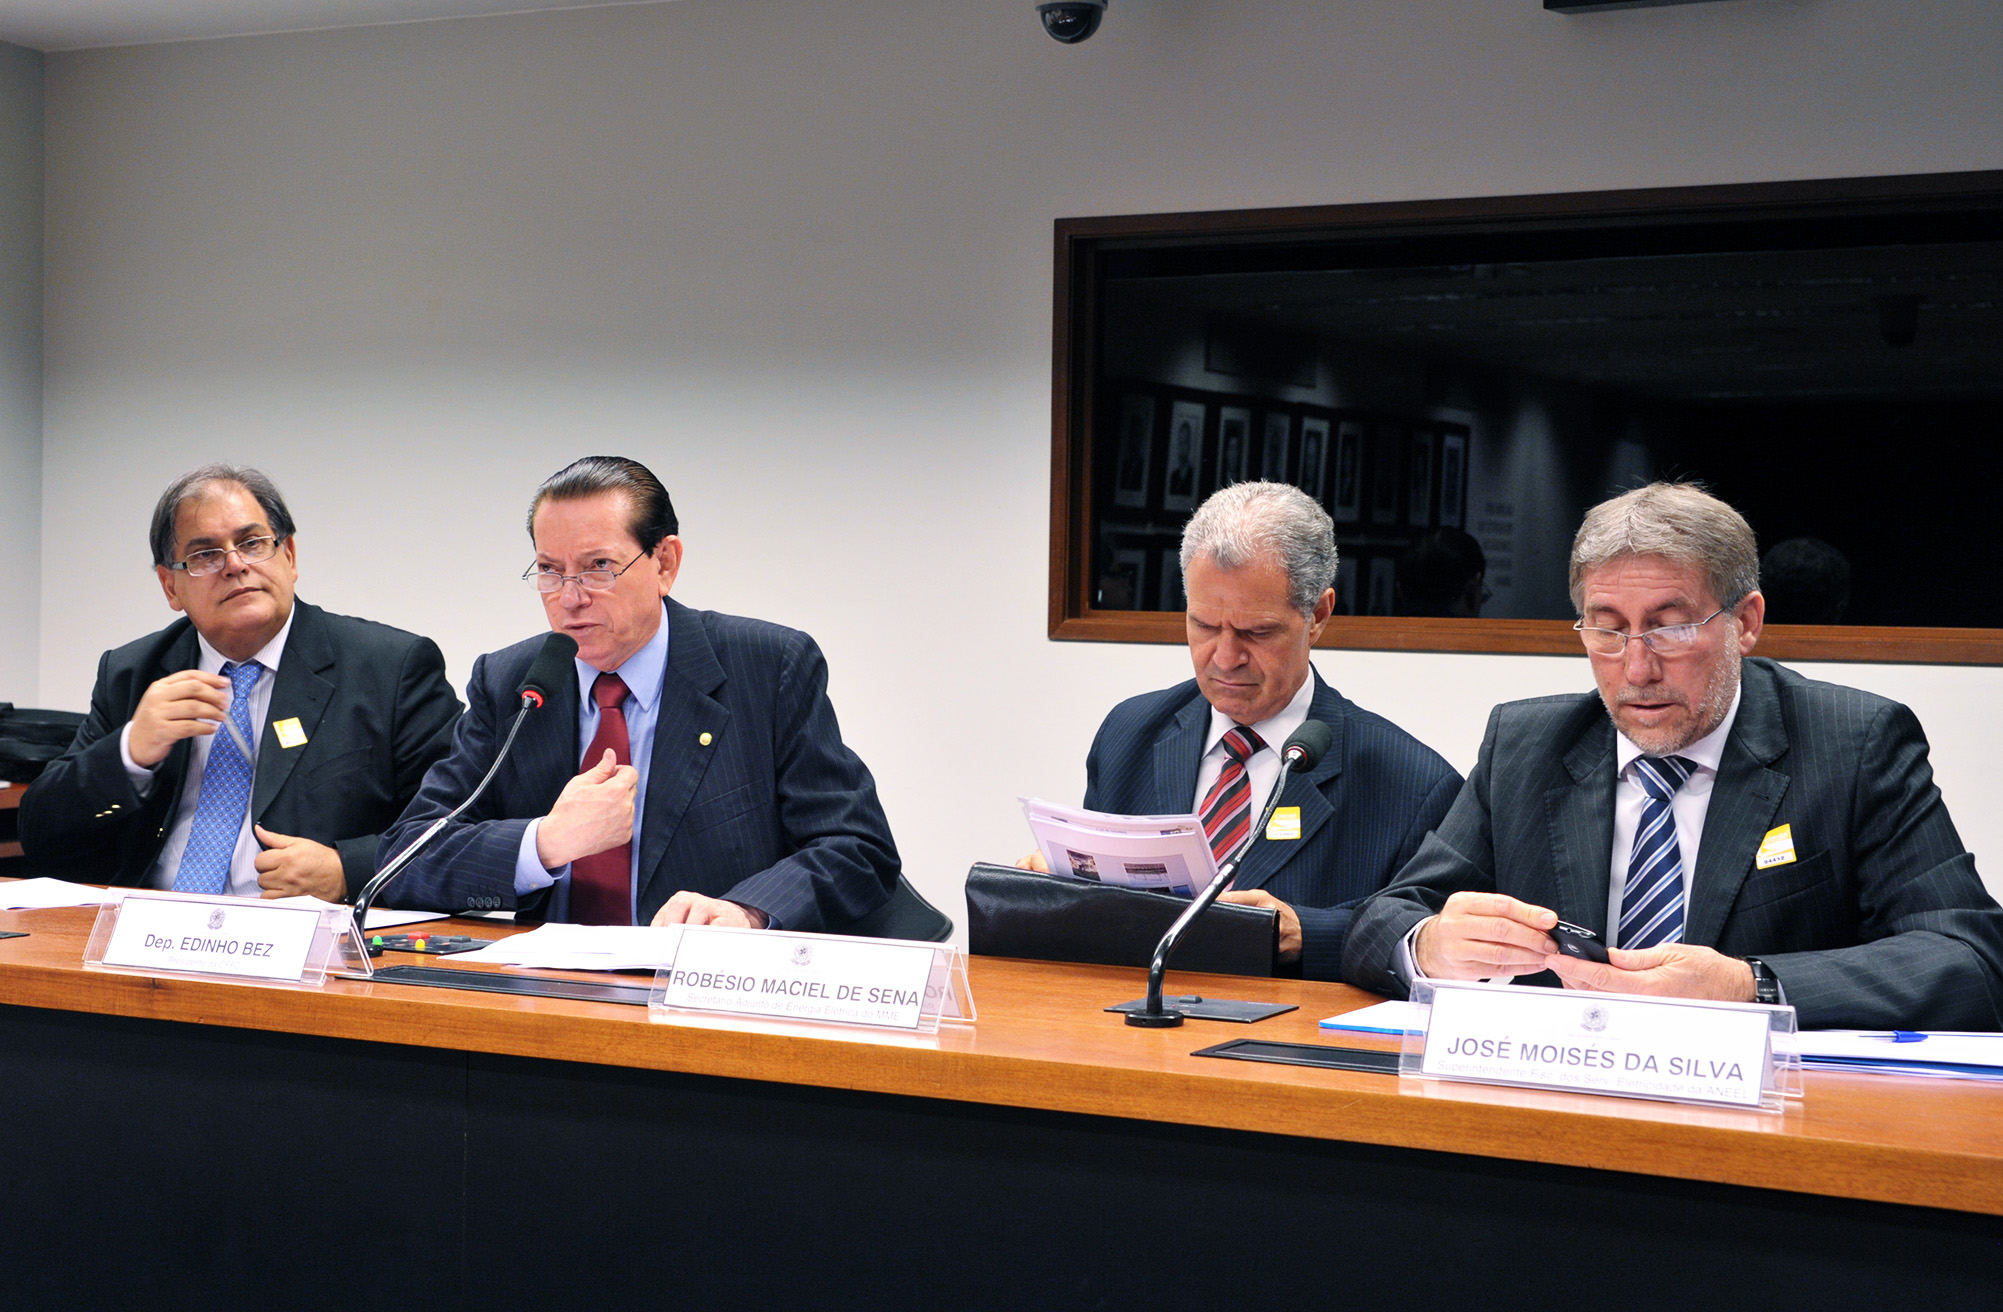 Comissão debate riscos de apagões durante a Copa 2014